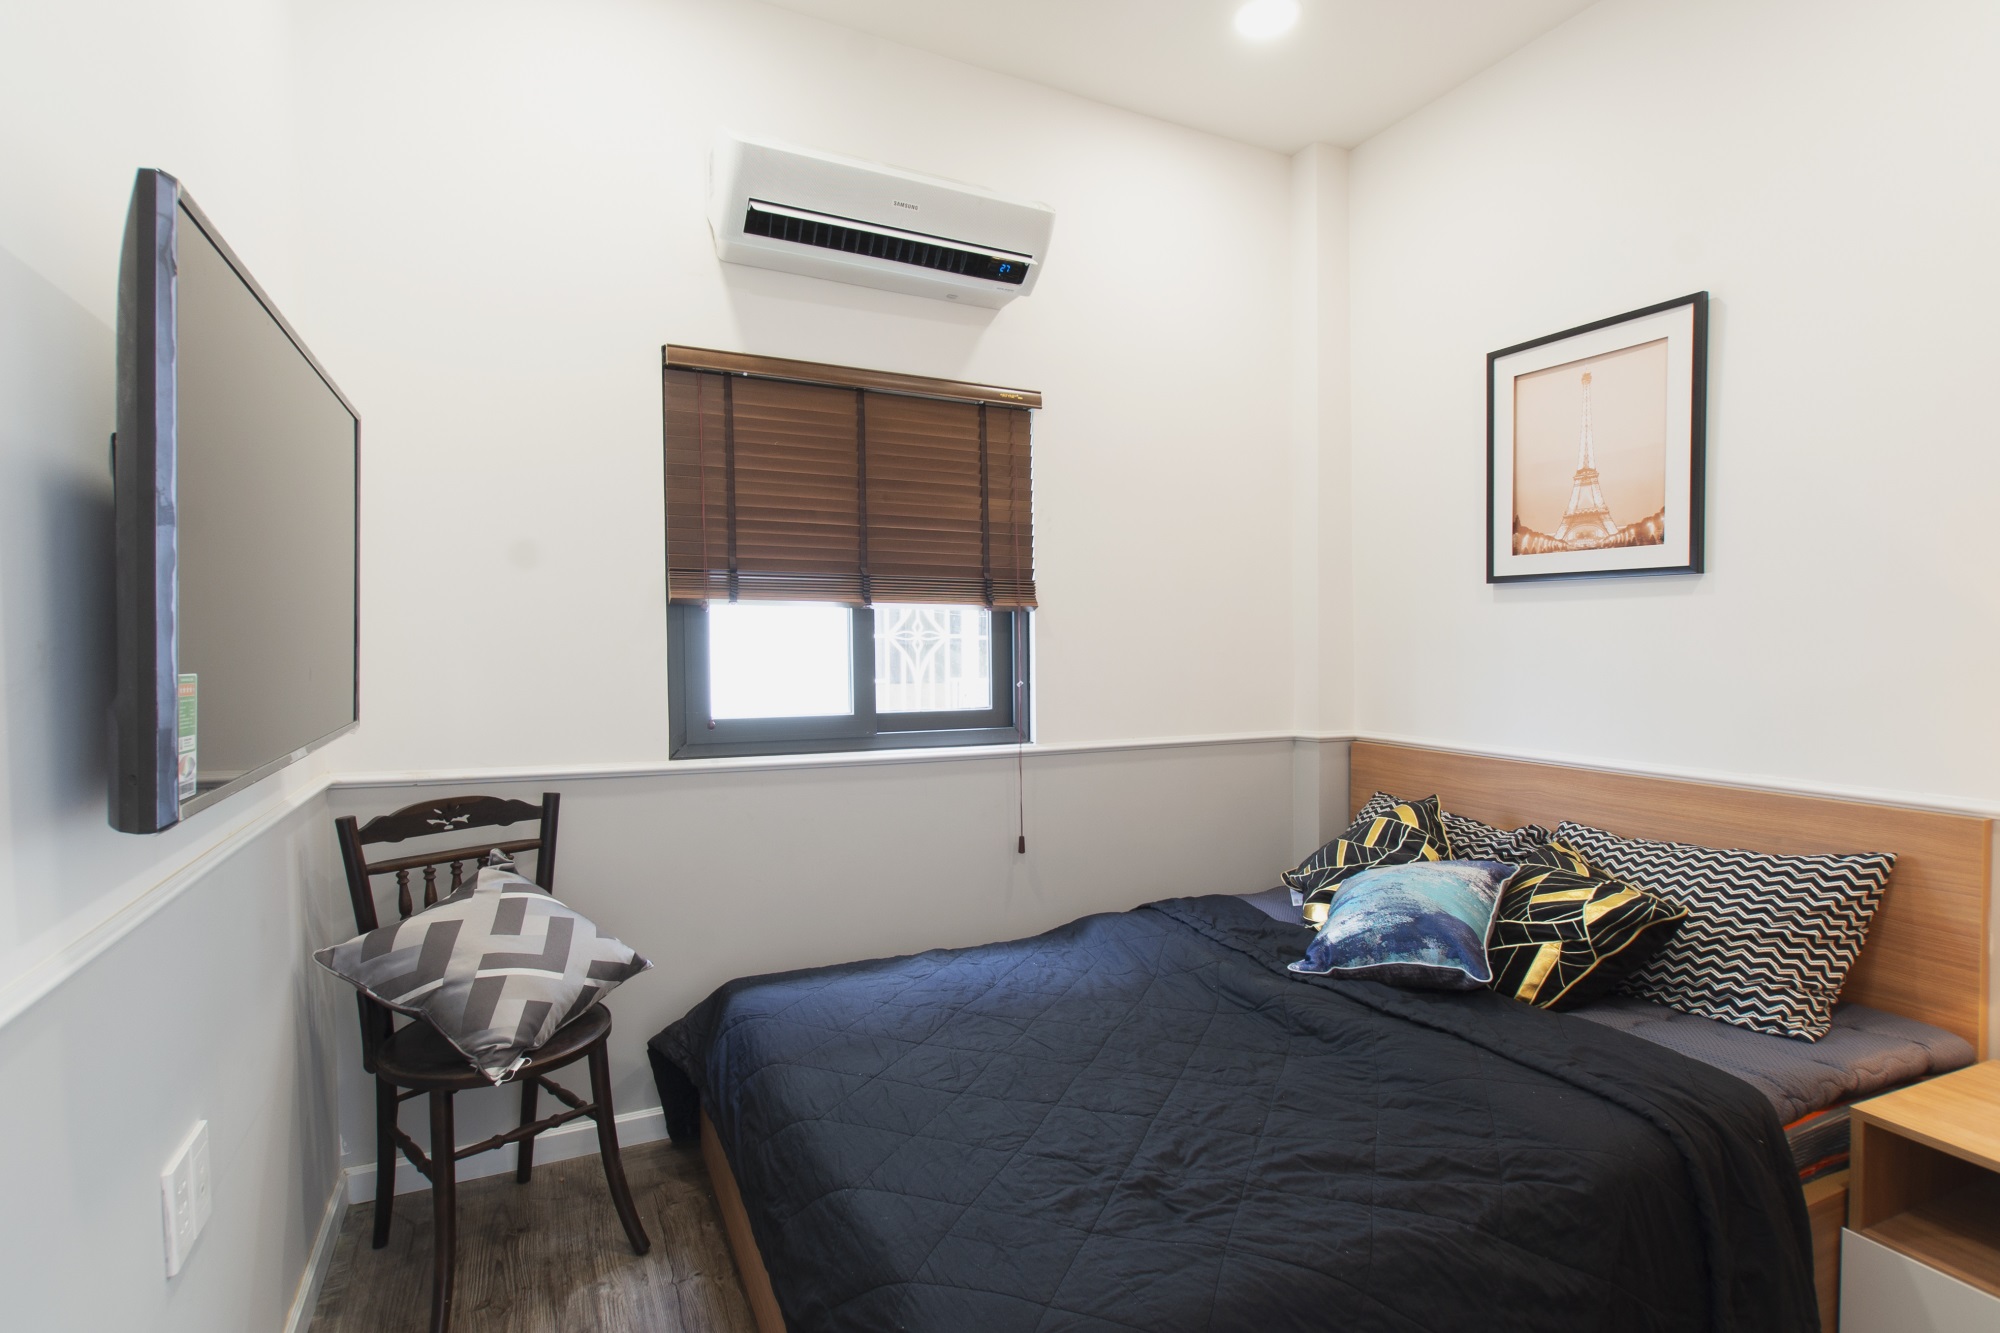  Không gian ngủ được thiết kế theo phong cách hiện đại, tối giản với tủ trang điểm và chiếc tivi treo tường.